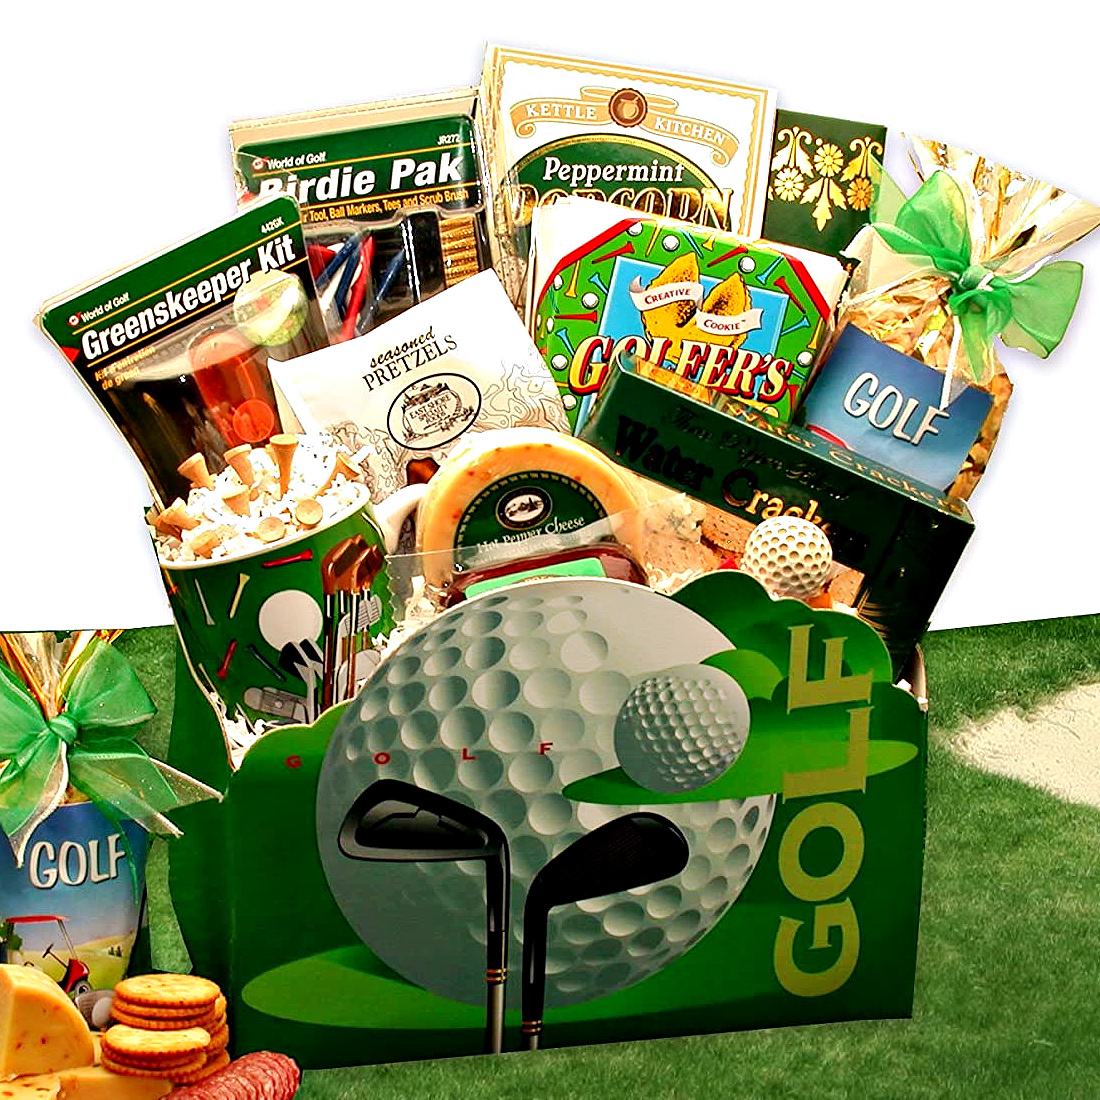 https://images.adorablegiftbaskets.com/media/Golf-Delights-gift-box.jpg